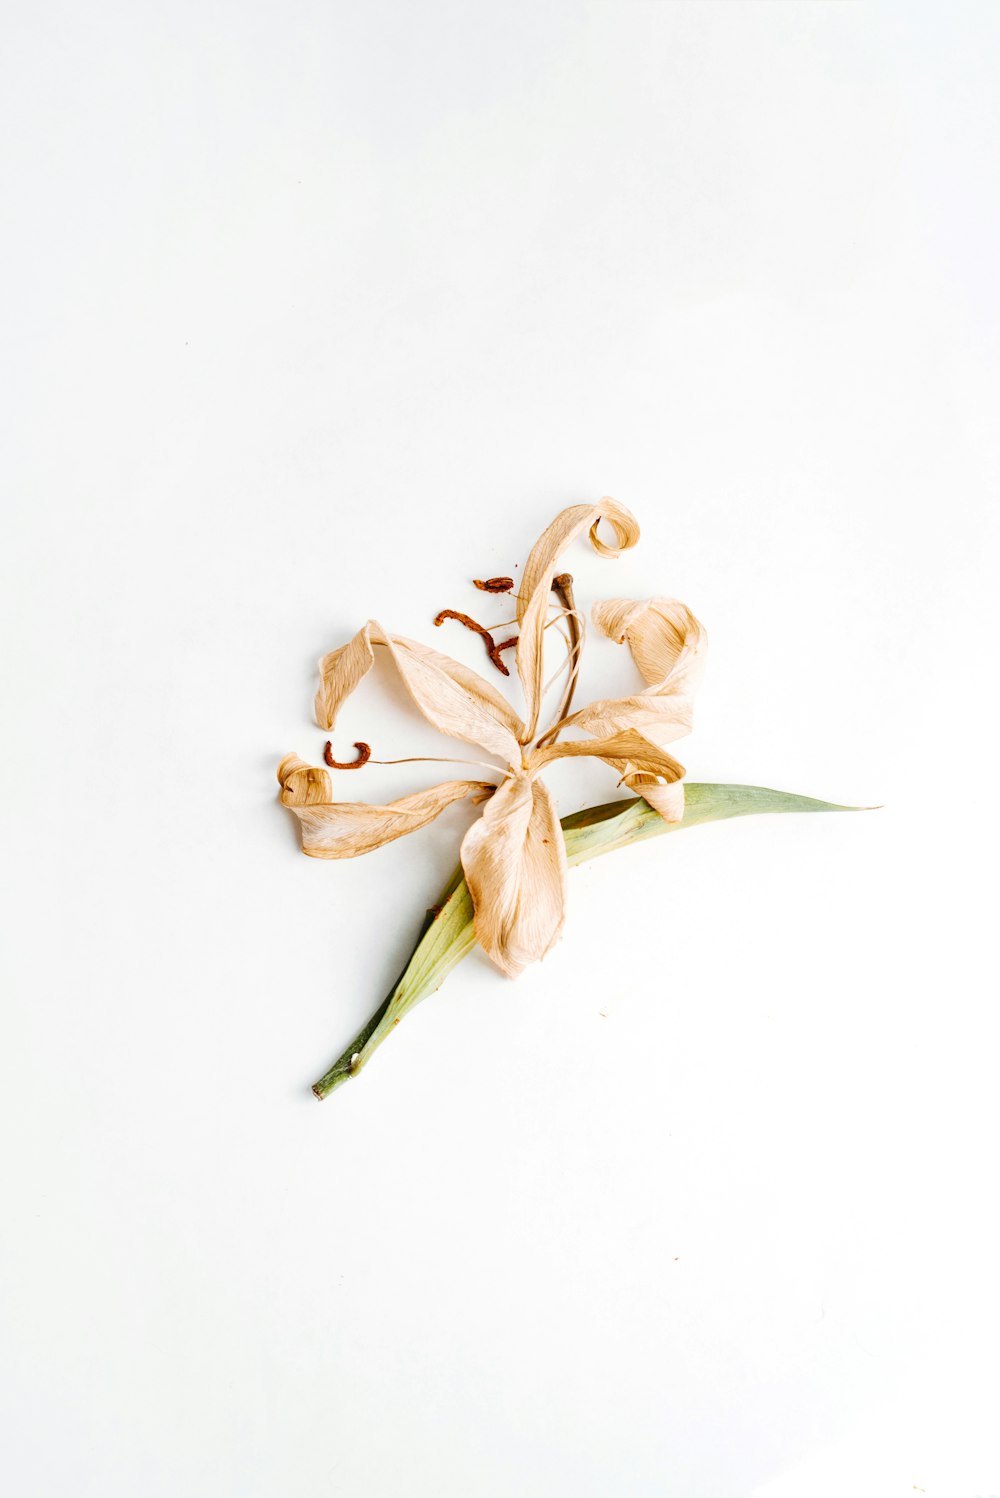 Flor marrón y blanca sobre superficie blanca